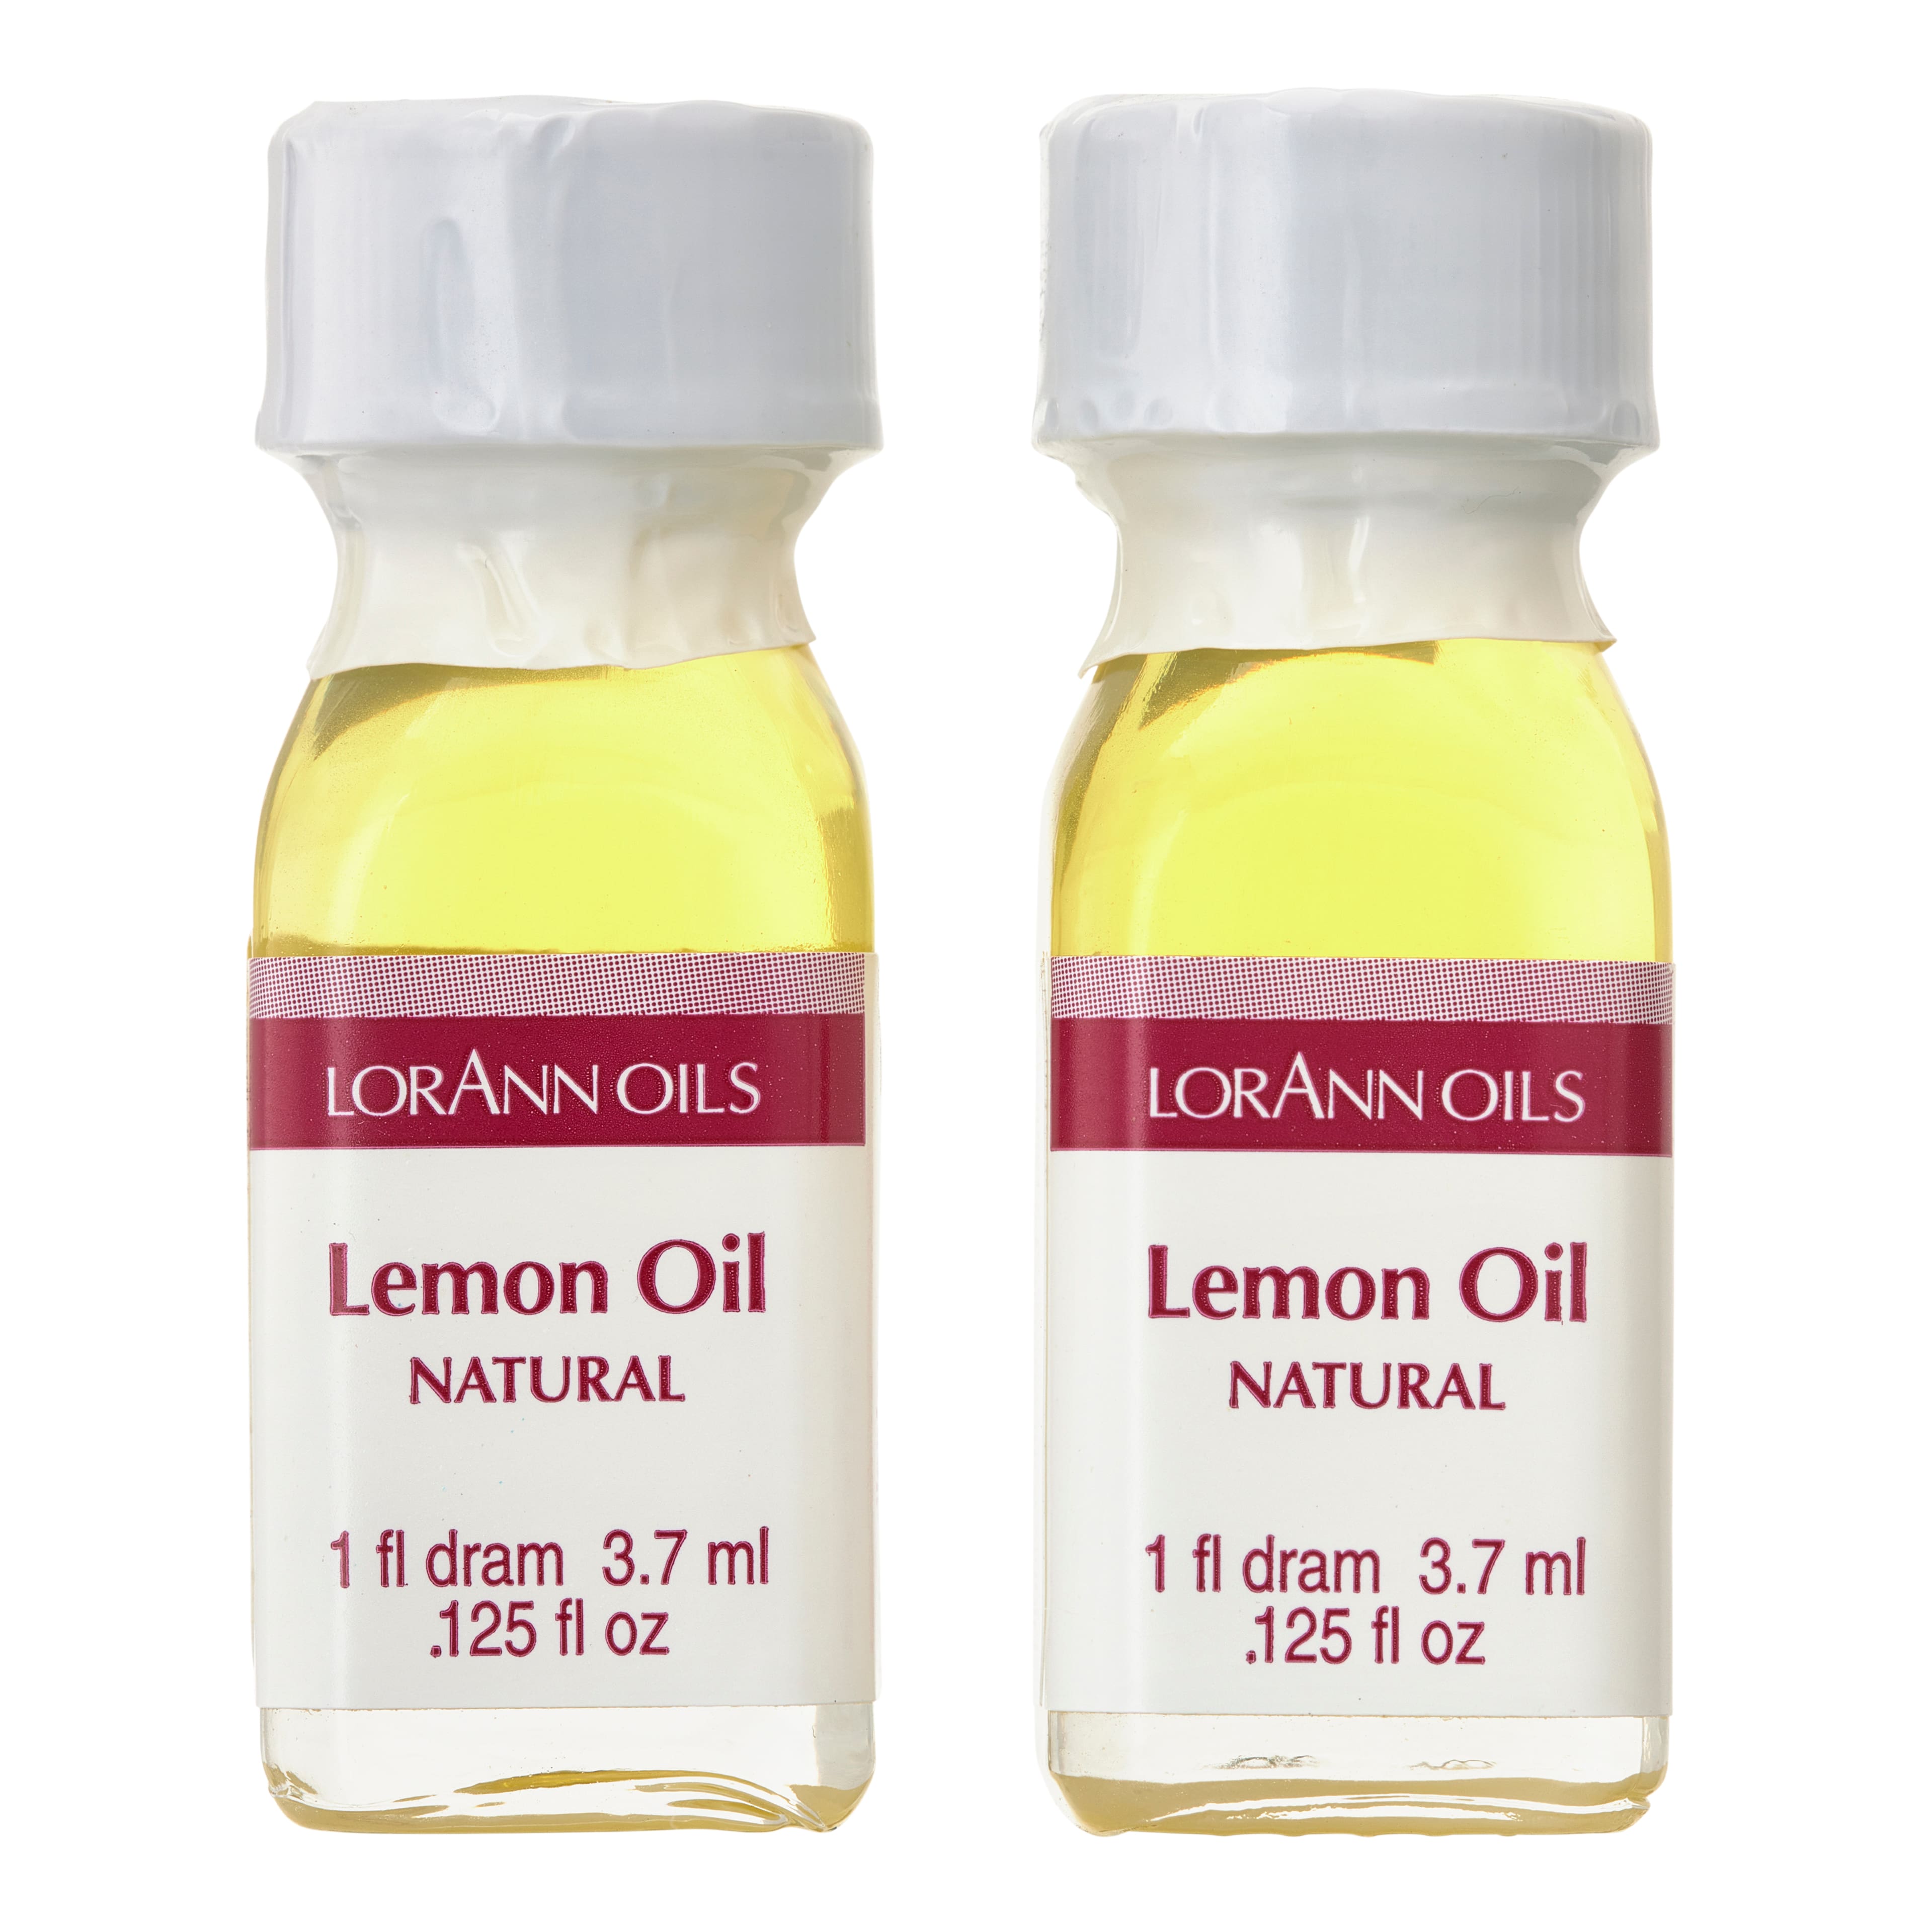 12 Packs: 2 ct. (24 total) LorAnn Oils Natural Lemon Oil